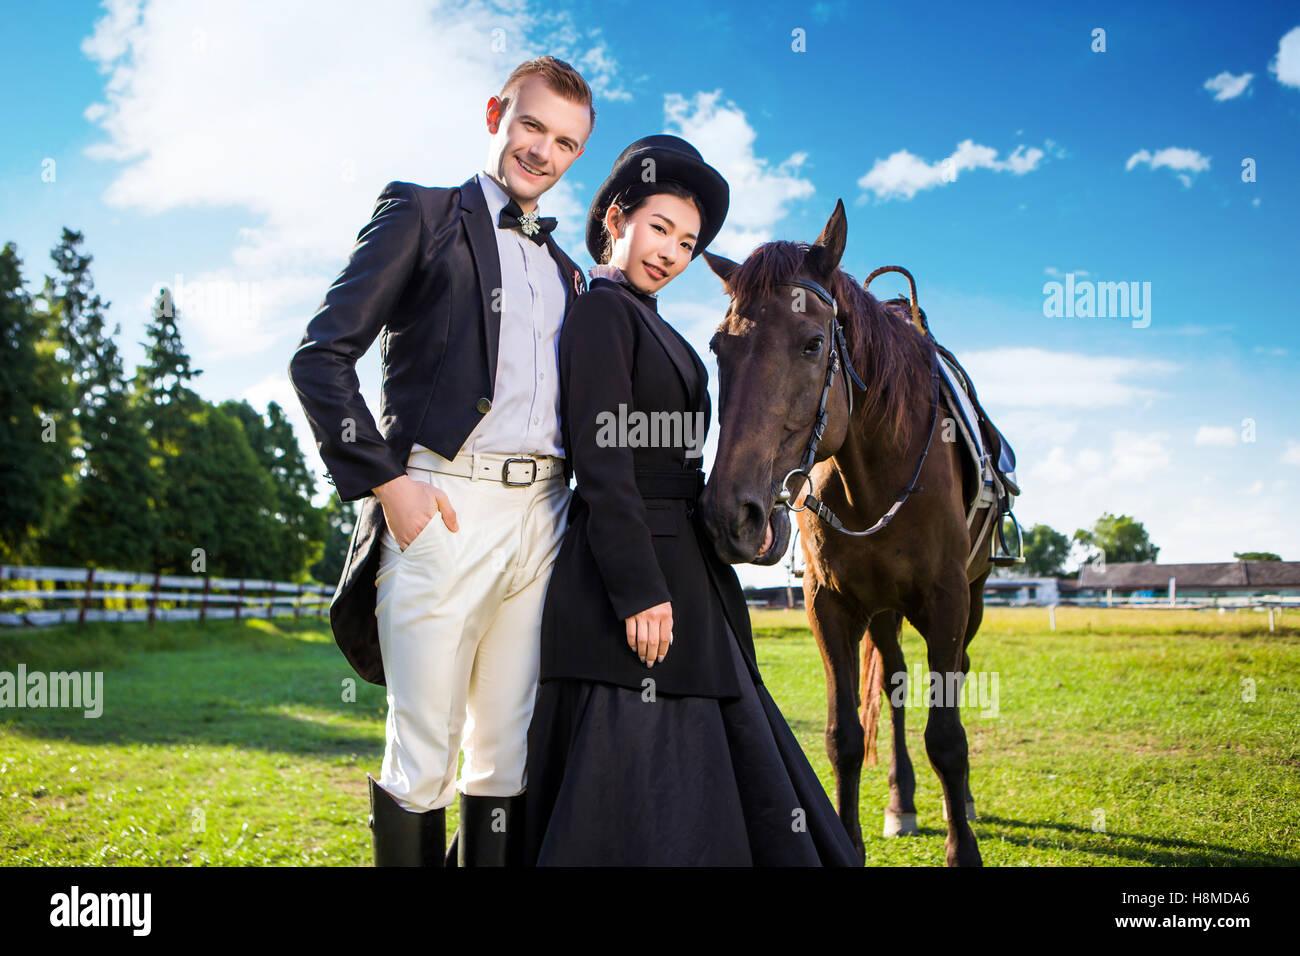 Portrait of smiling couple bien habillé avec un cheval sur terrain Banque D'Images